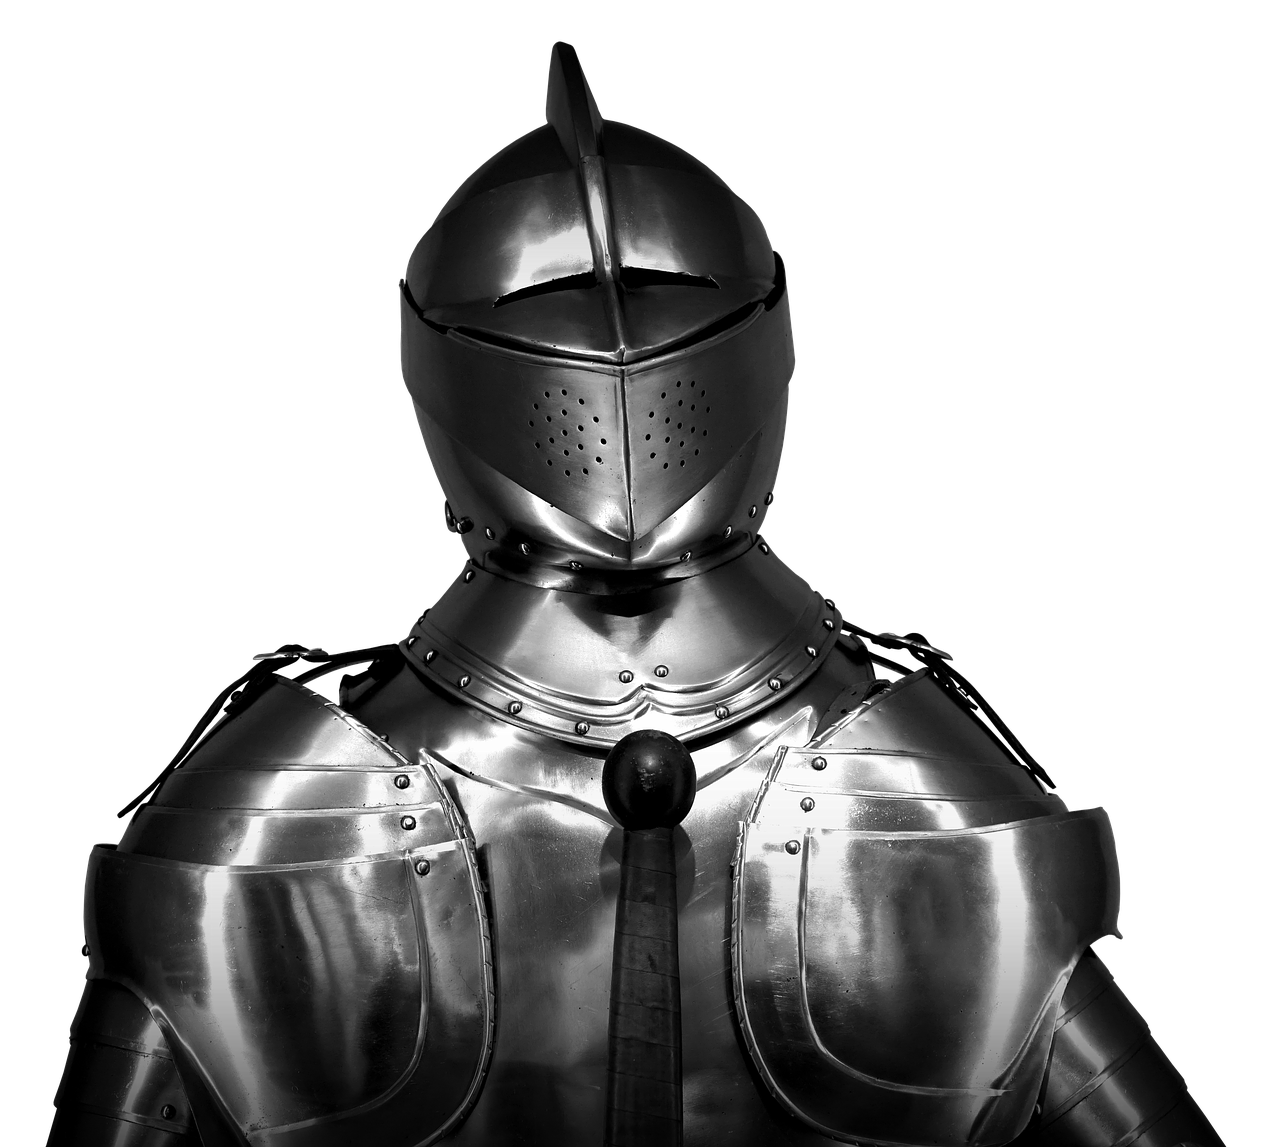 armor knight armor knight free photo